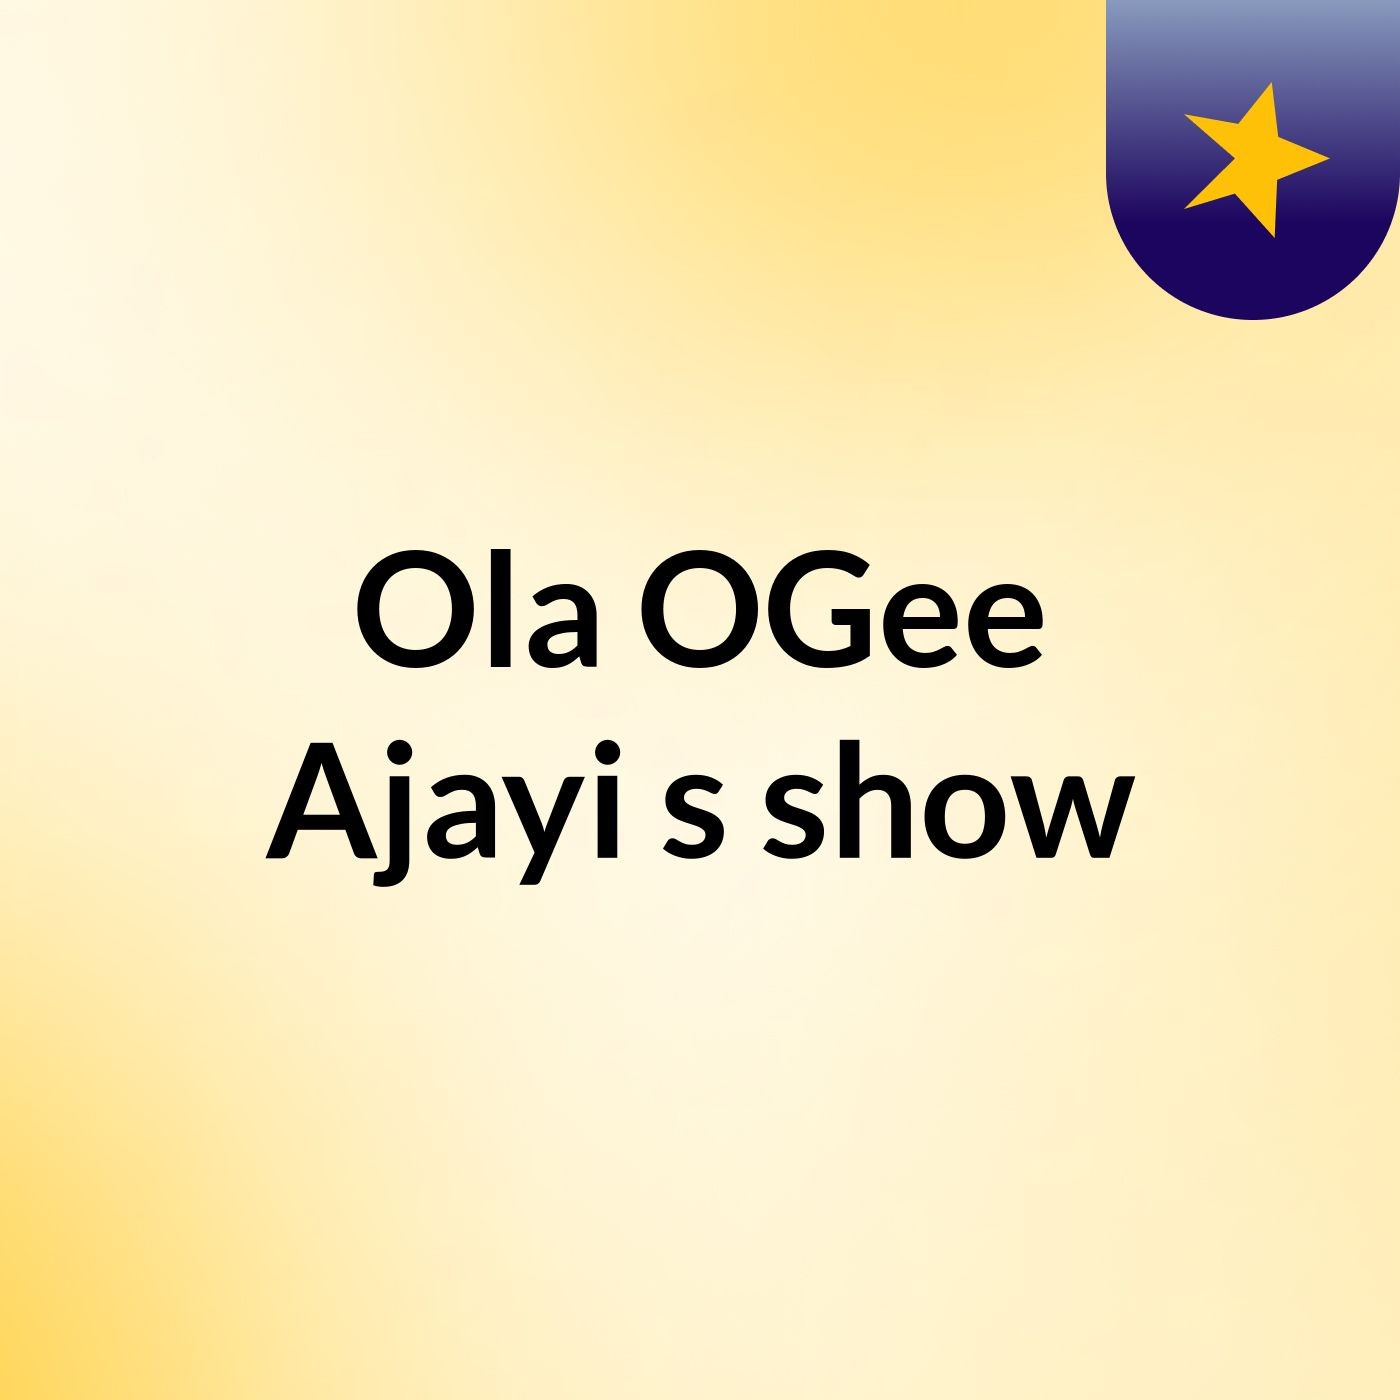 Ola OGee Ajayi's show